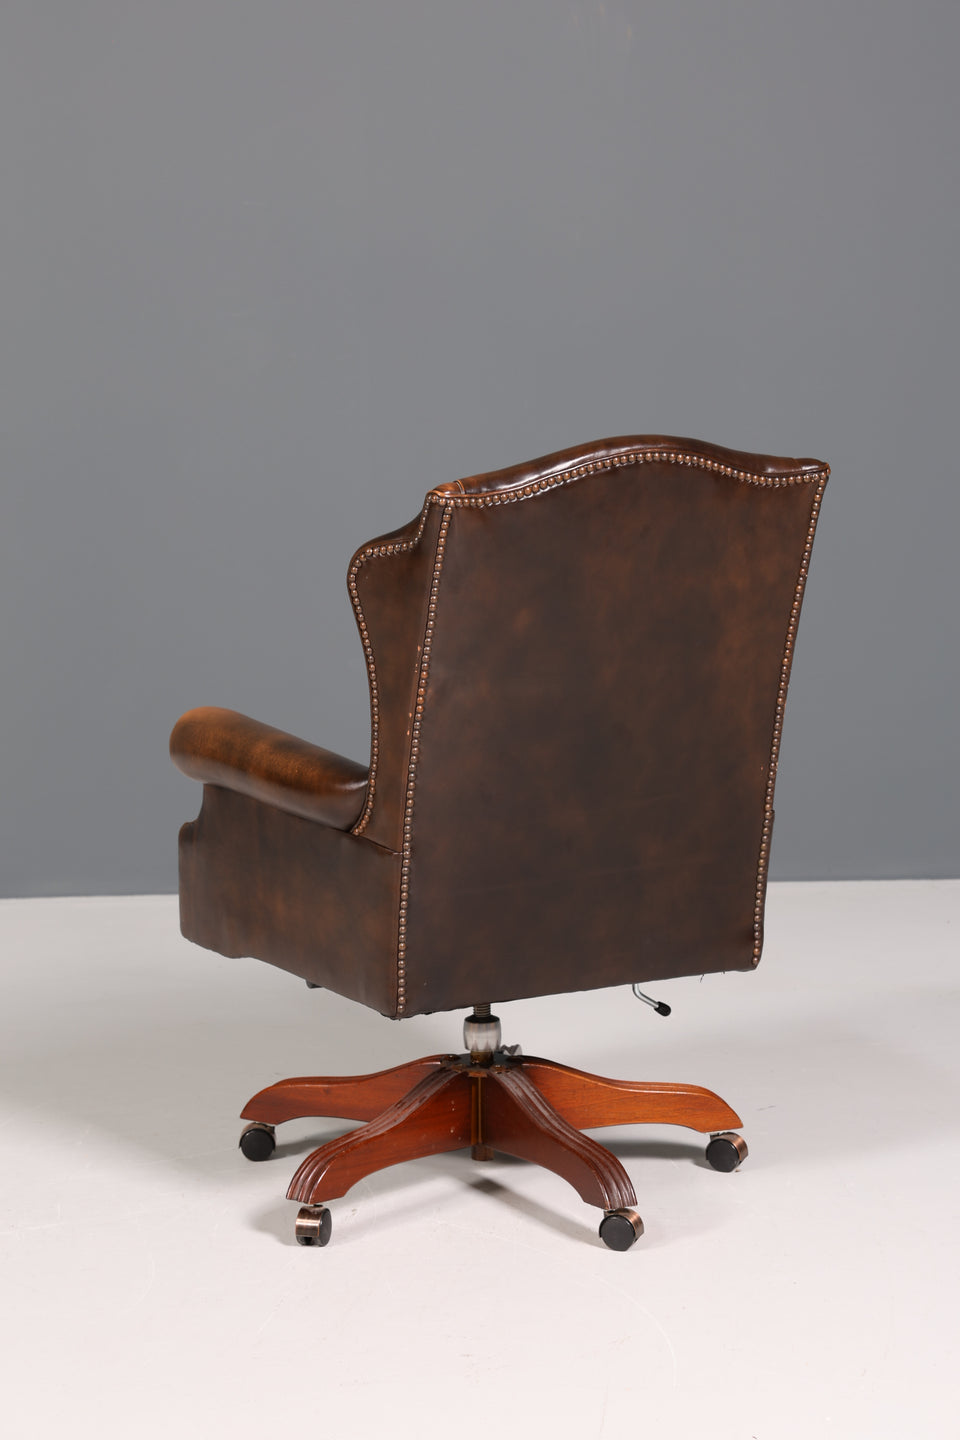 Wunderschöner Original Chesterfield Bürosessel "Wade" echt Leder Sessel Bürostuhl Office Chair